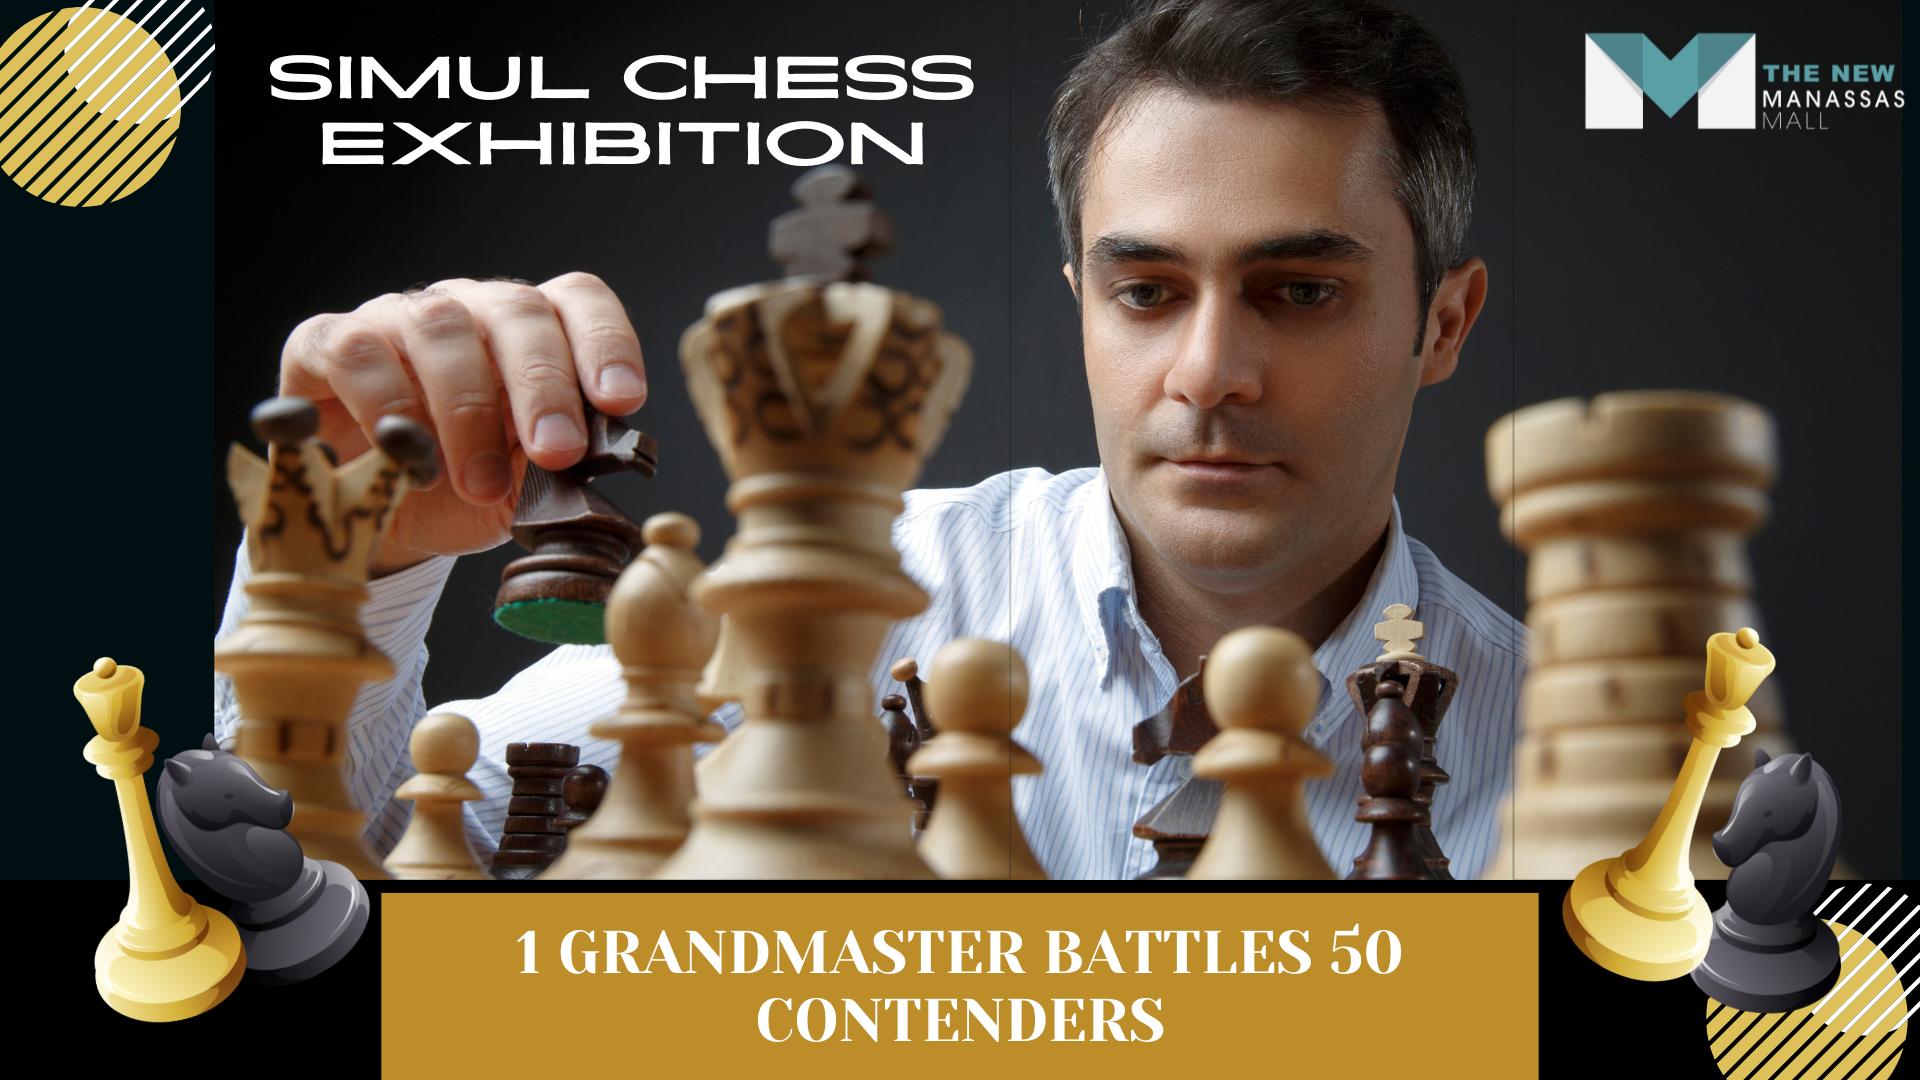 Grand Master of Chess! 